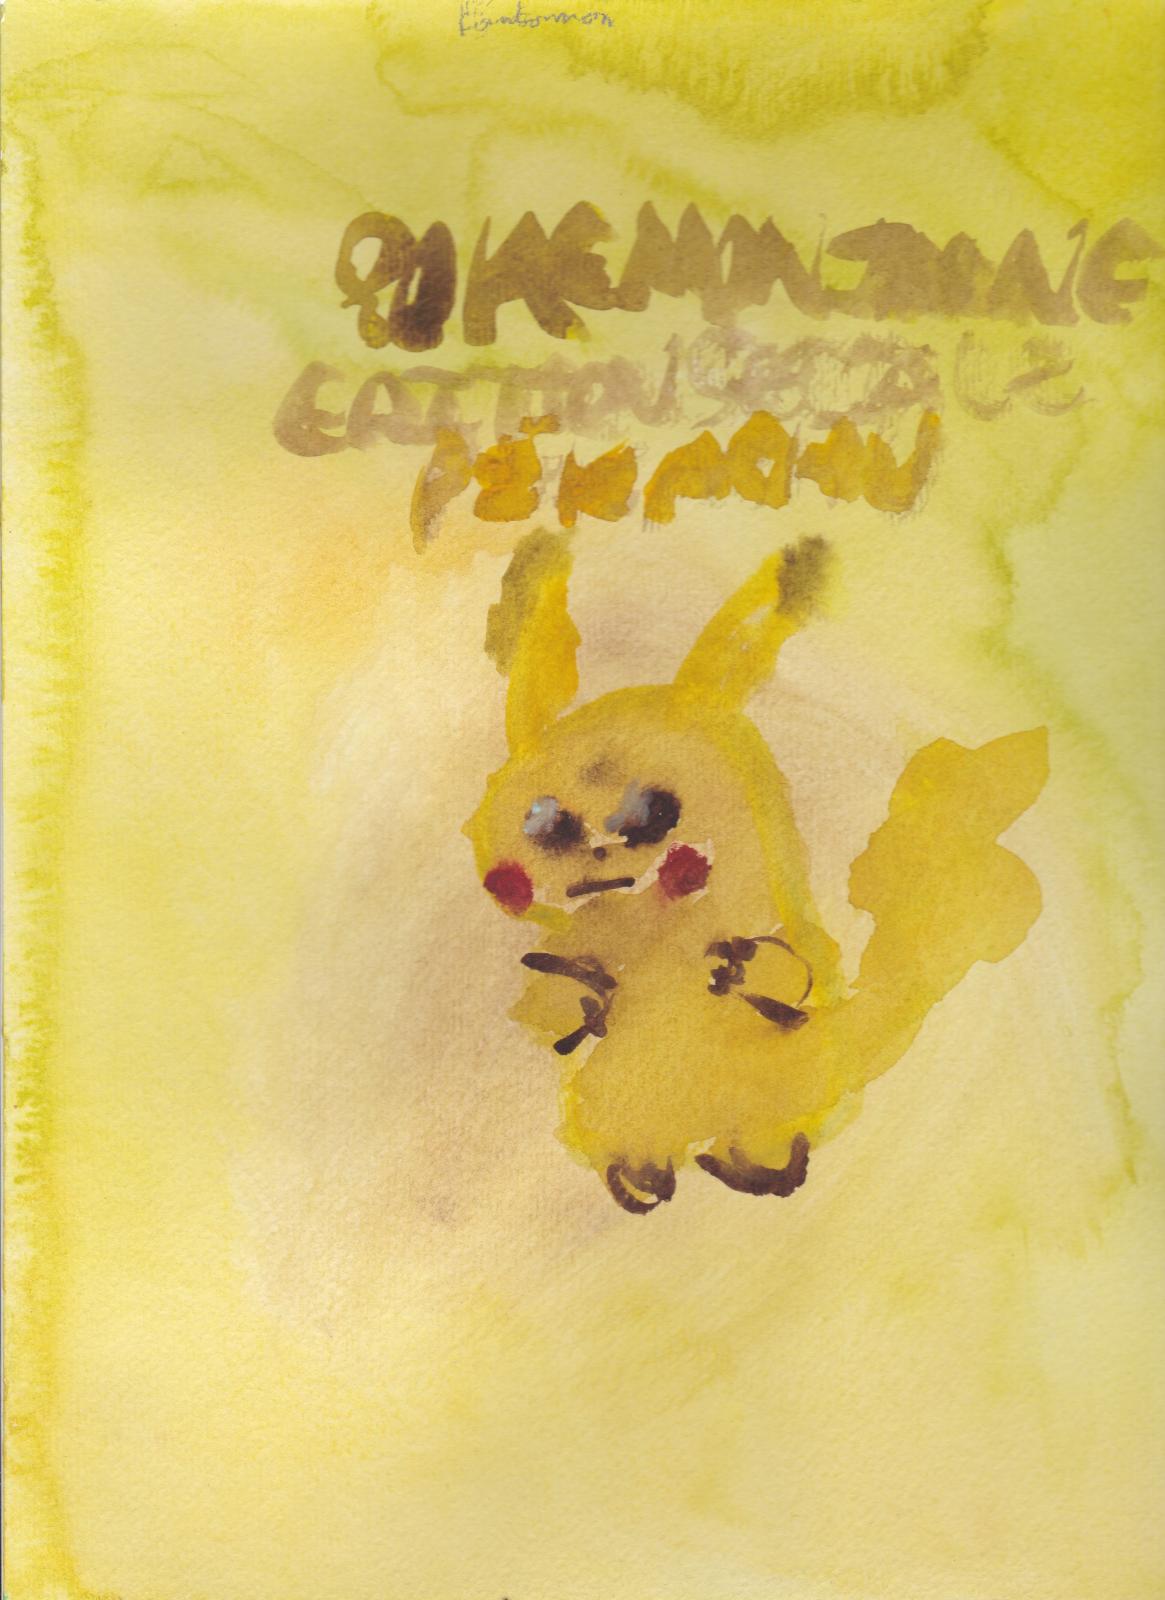 Dégradé de jaune: Pokémon version Jaune édition spéciale Pikachu (Moi) Magnifique Pikachu Rafa.